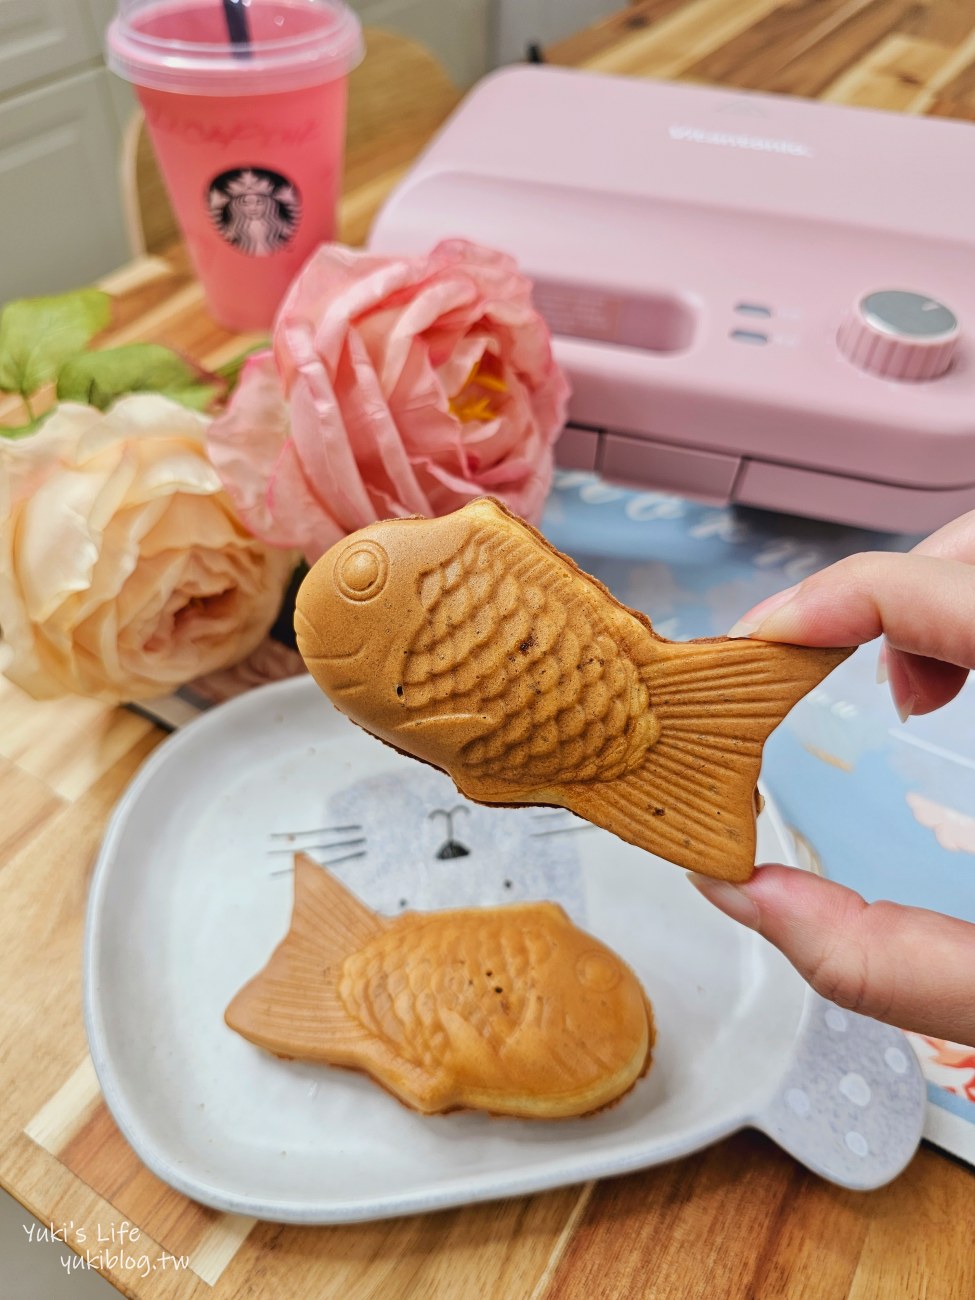 【開團×食譜】日本Vitantonio鬆餅機｜計時器新款小V~烘焙新手必買好物 - yukiblog.tw